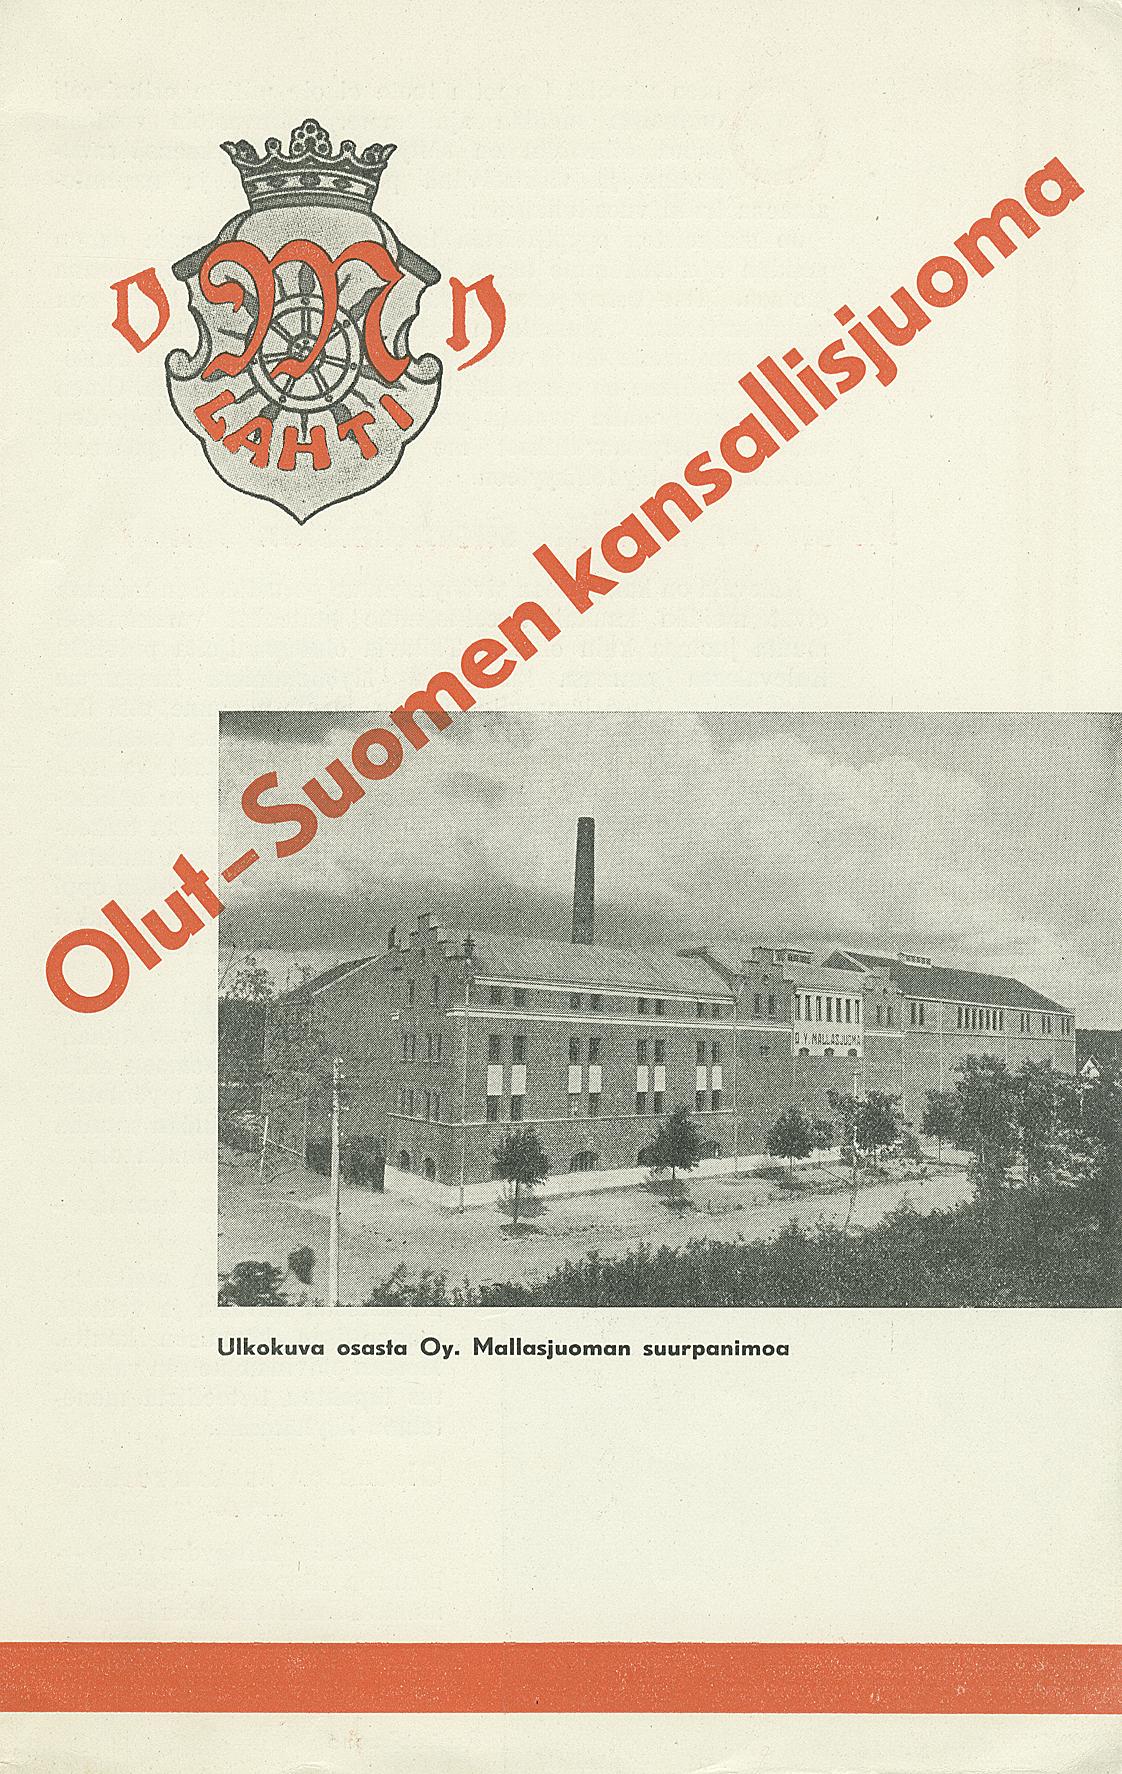 Olut - Suomen kansallisjuoma, Lahti  - Digitaaliset aineistot -  Kansalliskirjasto